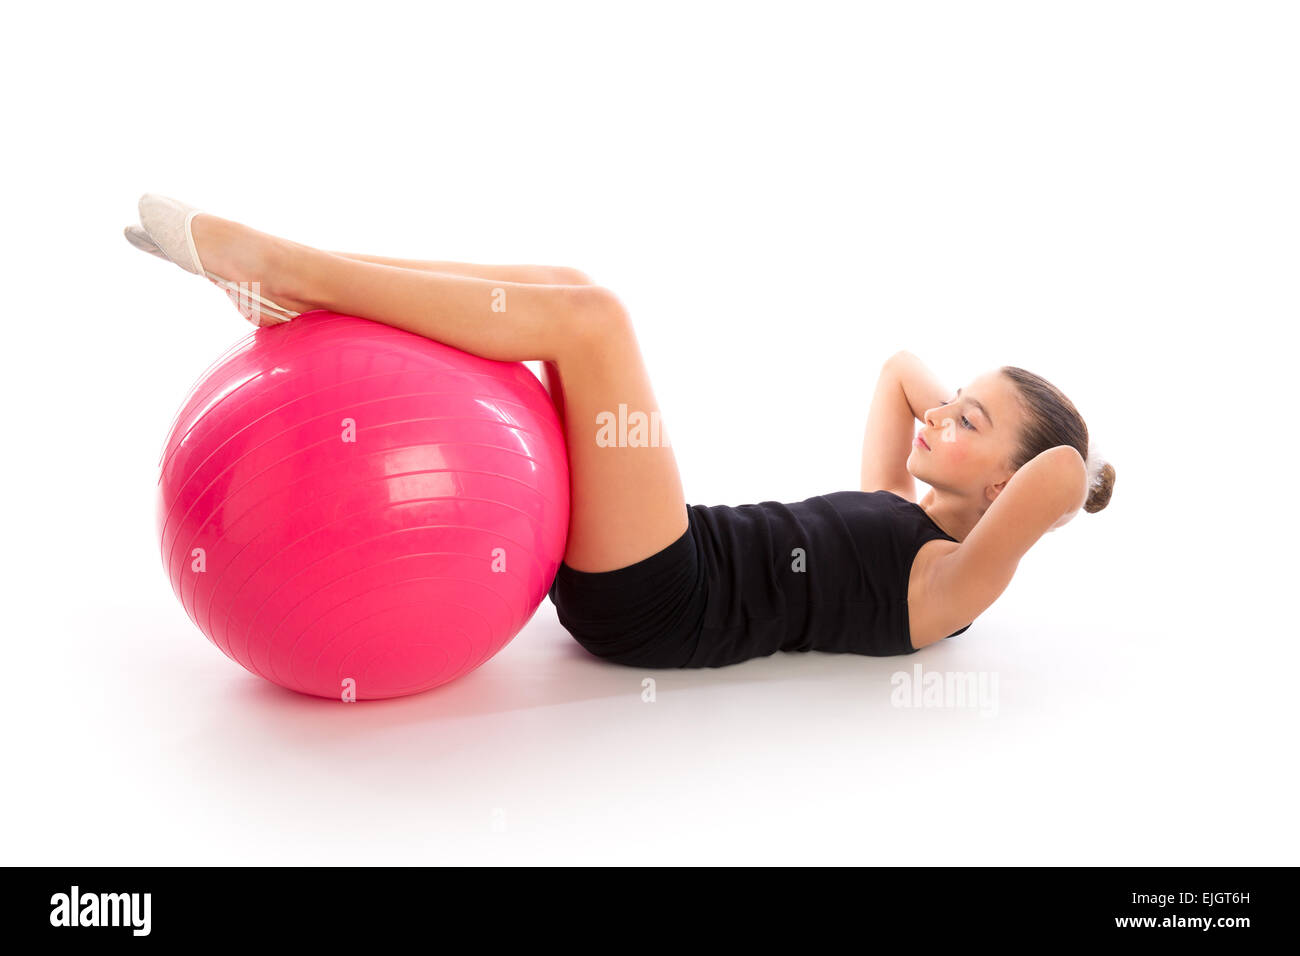 Fitball Fitness swiss ball kid girl esercizio allenamento su sfondo bianco Foto Stock